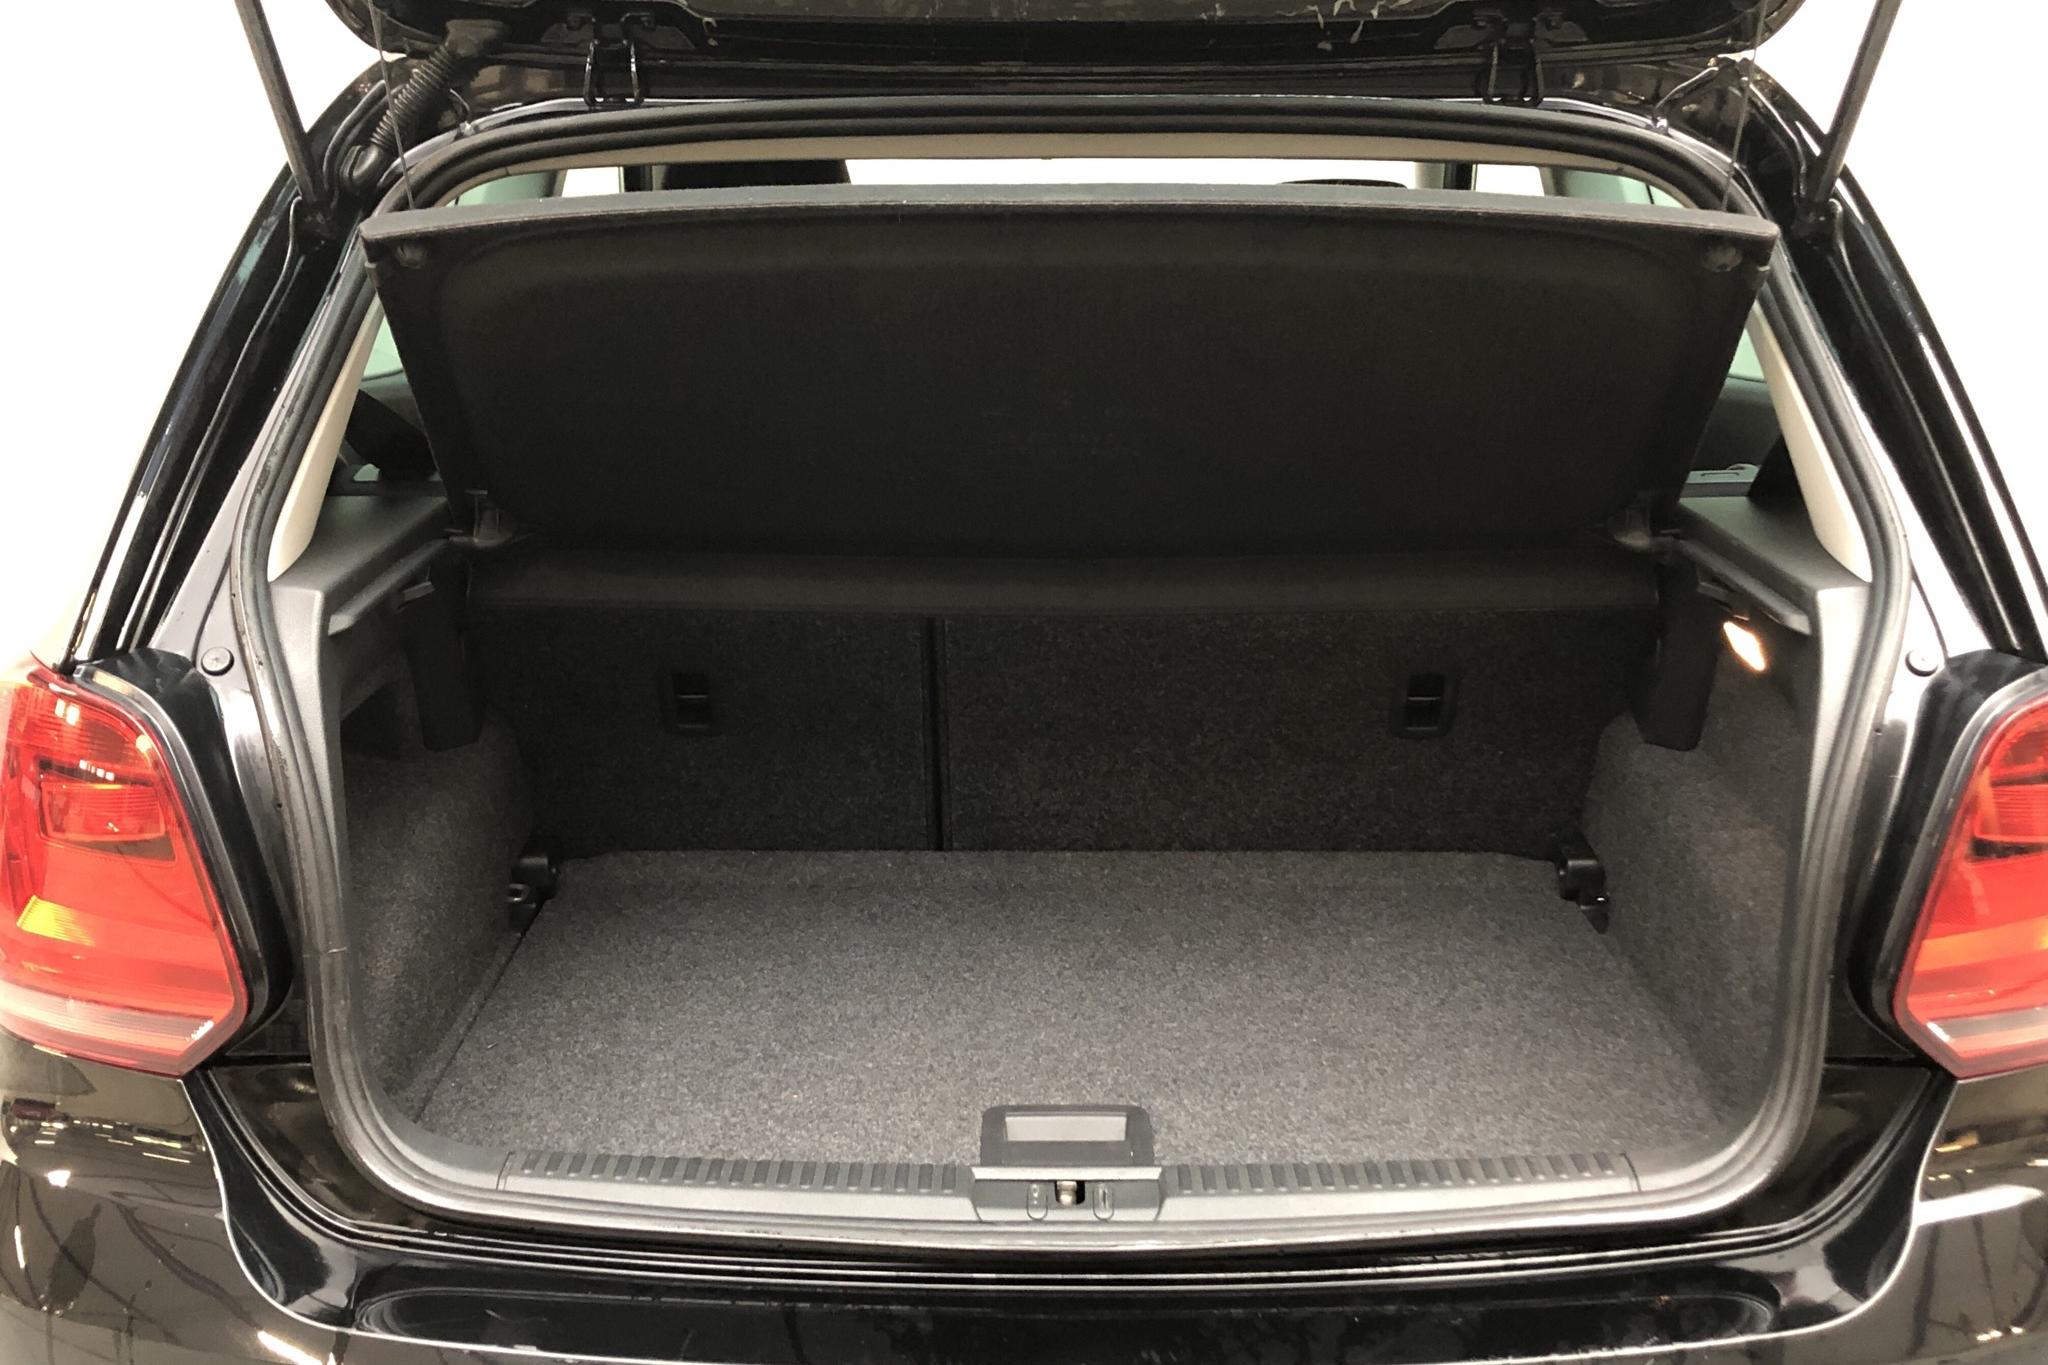 VW Polo 1.2 TSI 5dr (90hk) - 26 140 km - Automatic - black - 2017